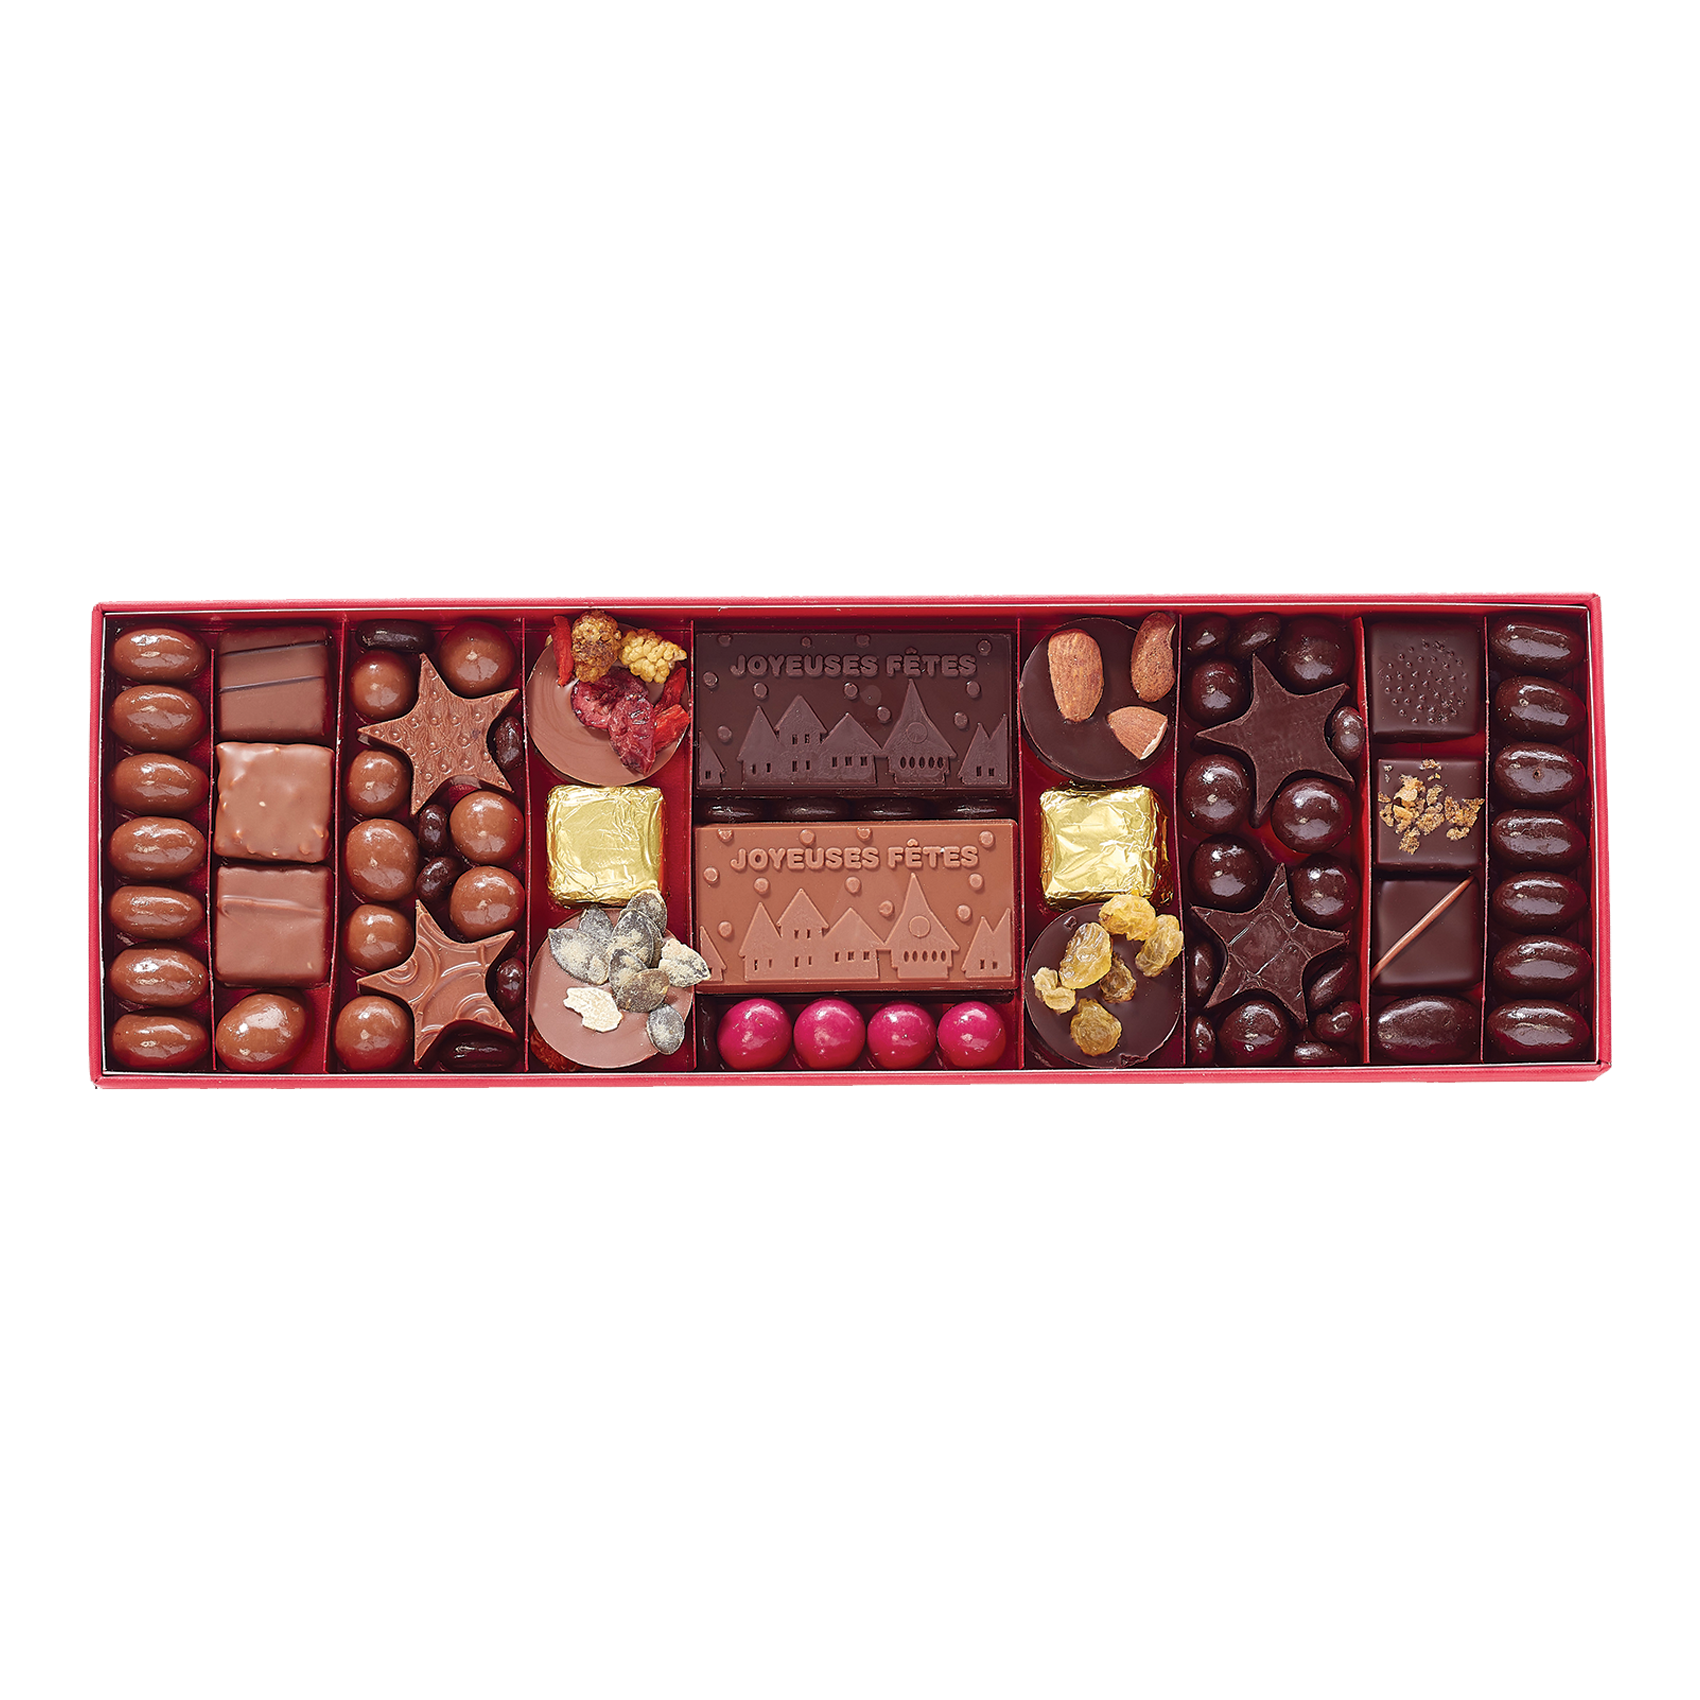 Tous les produits du moment - Chocolats - Coffret noel chaleureux 8 sachets